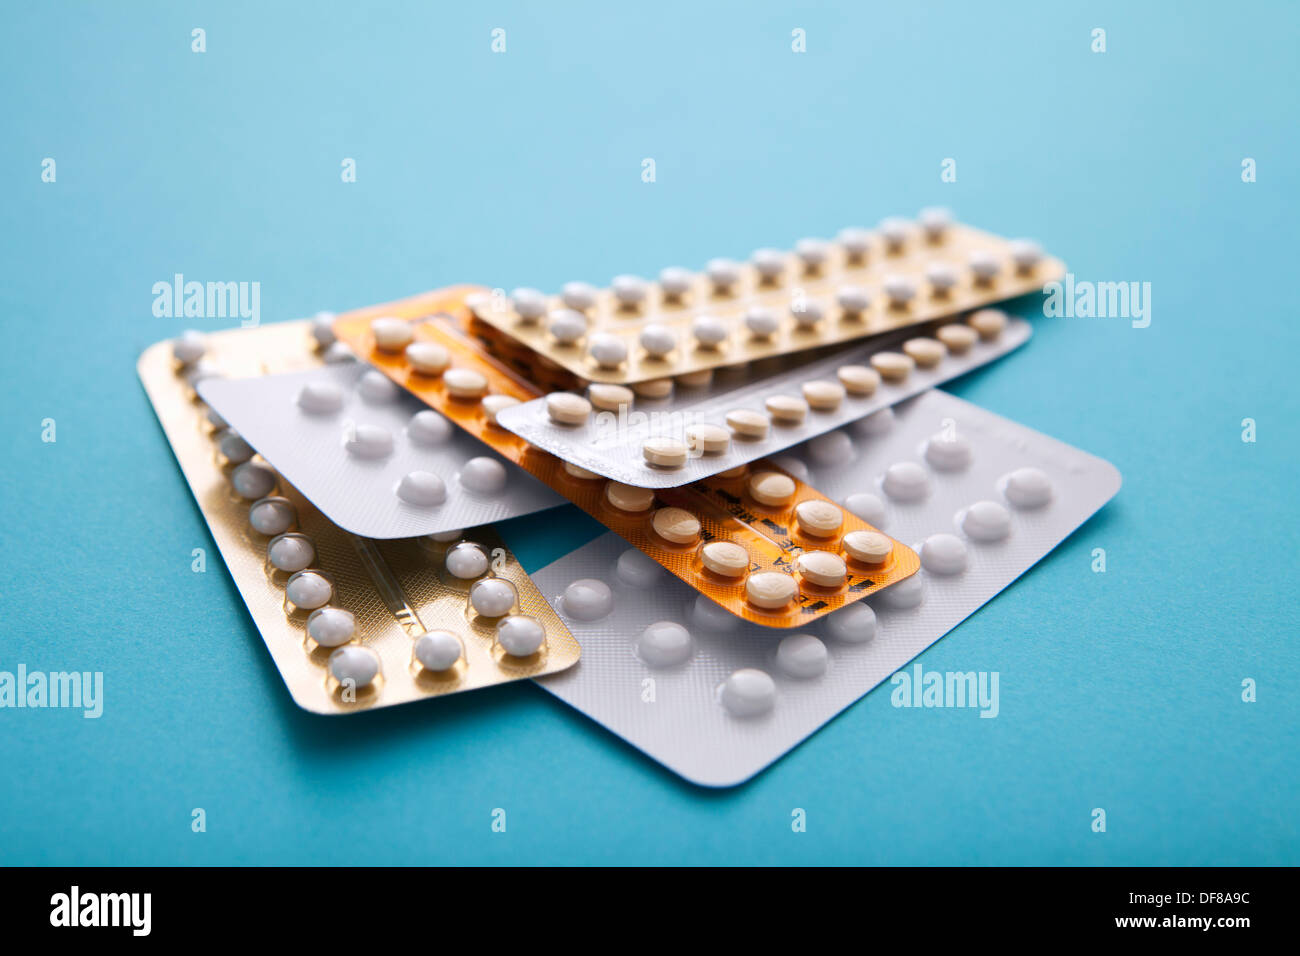 Pilule contraceptive Banque D'Images